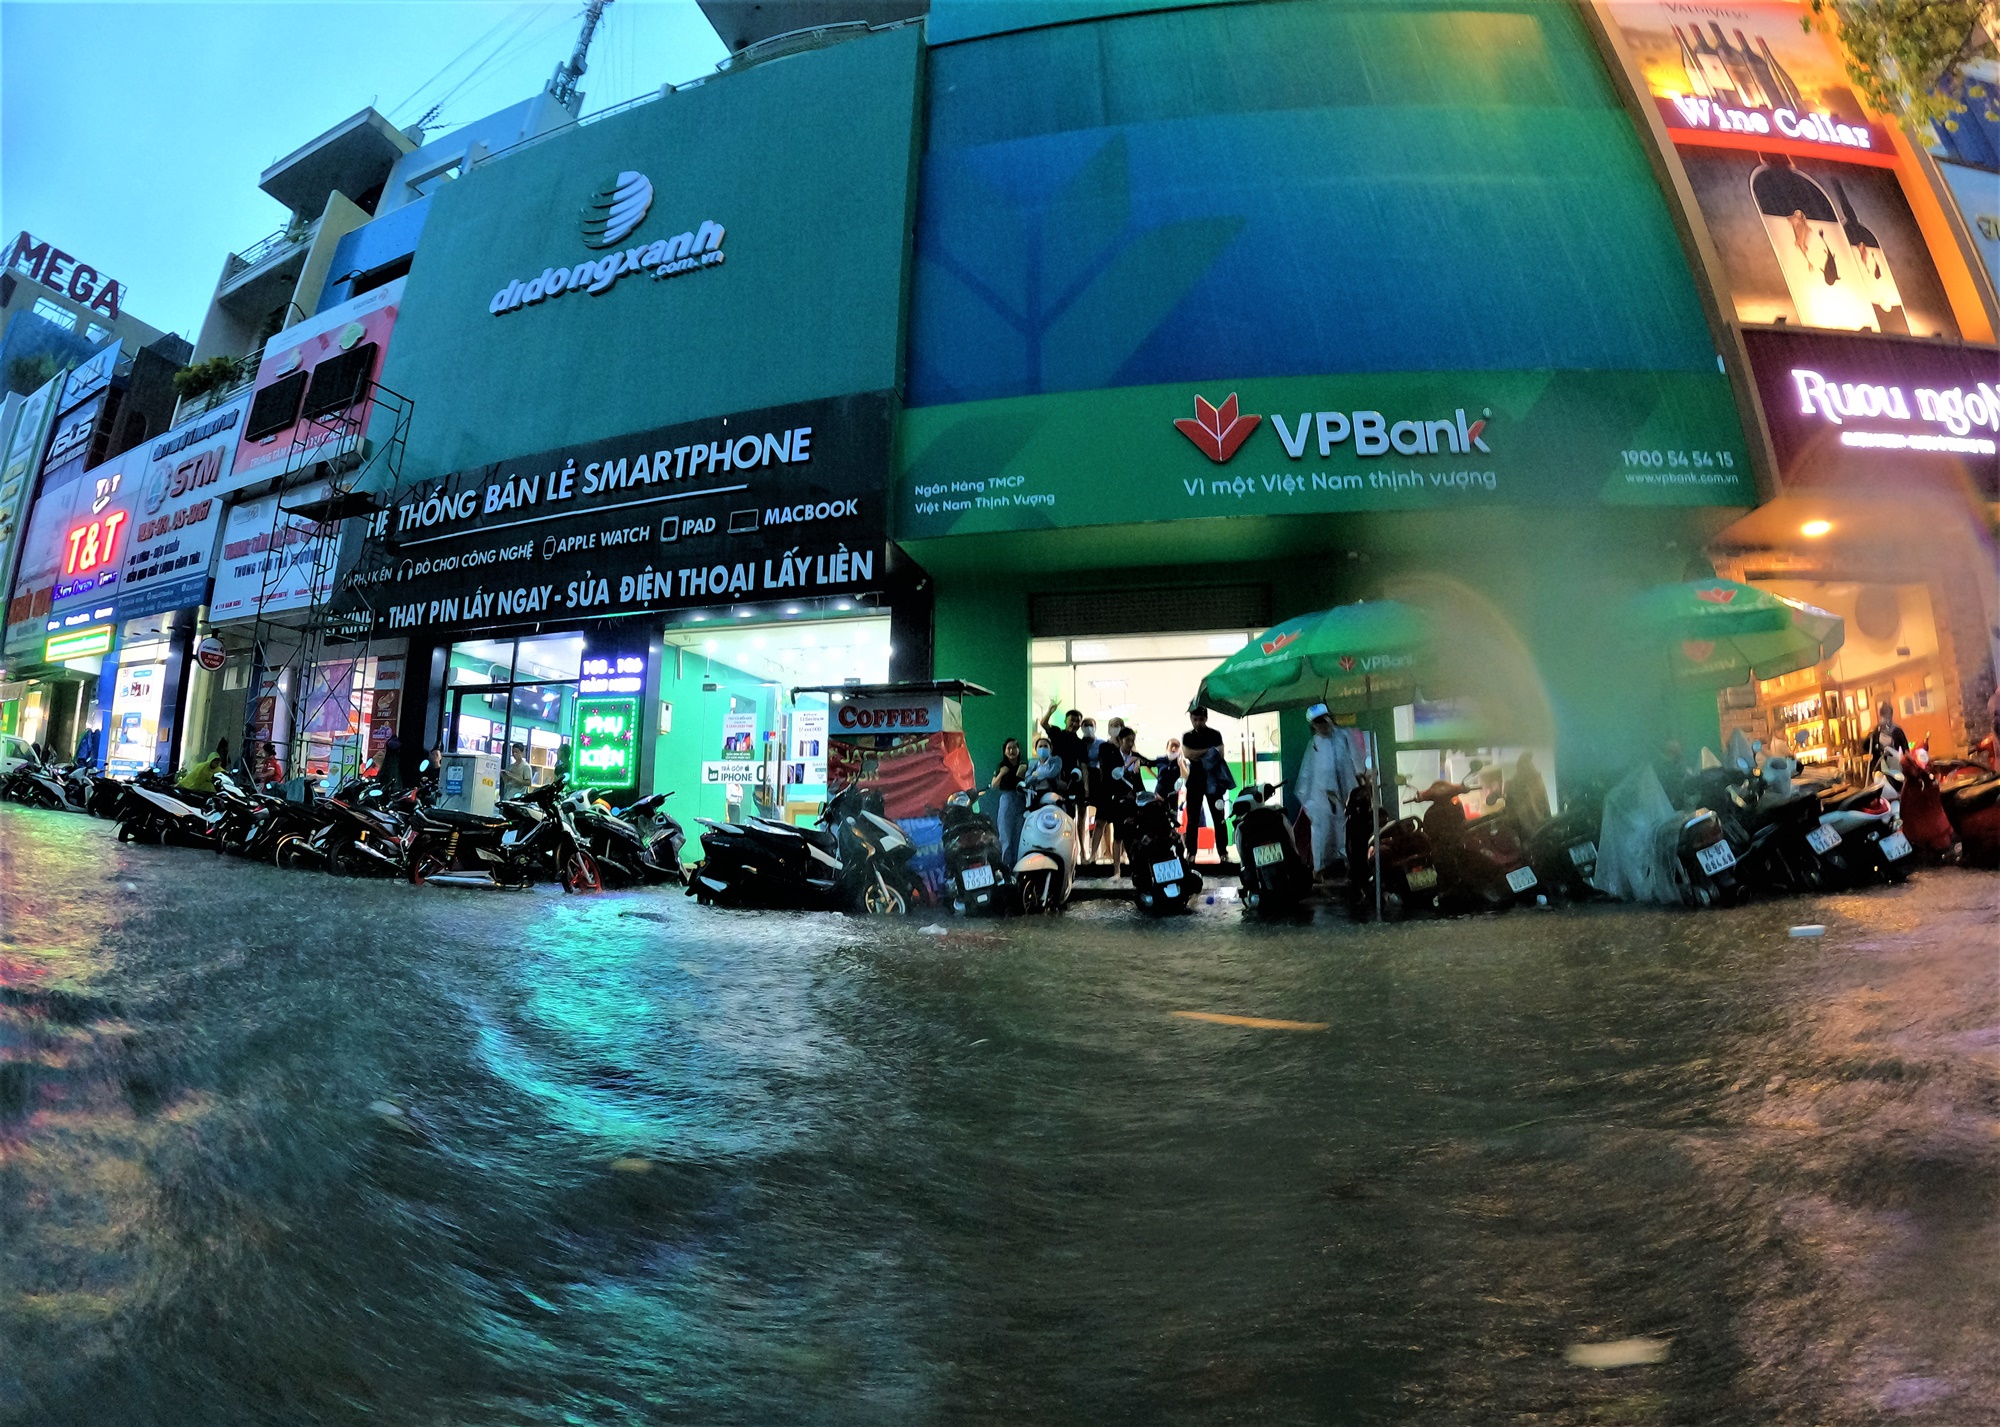 Clip, ảnh: Đường phố Đà Nẵng thành sông sau mưa, người dân dắt xe bì bõm về nhà - Ảnh 16.